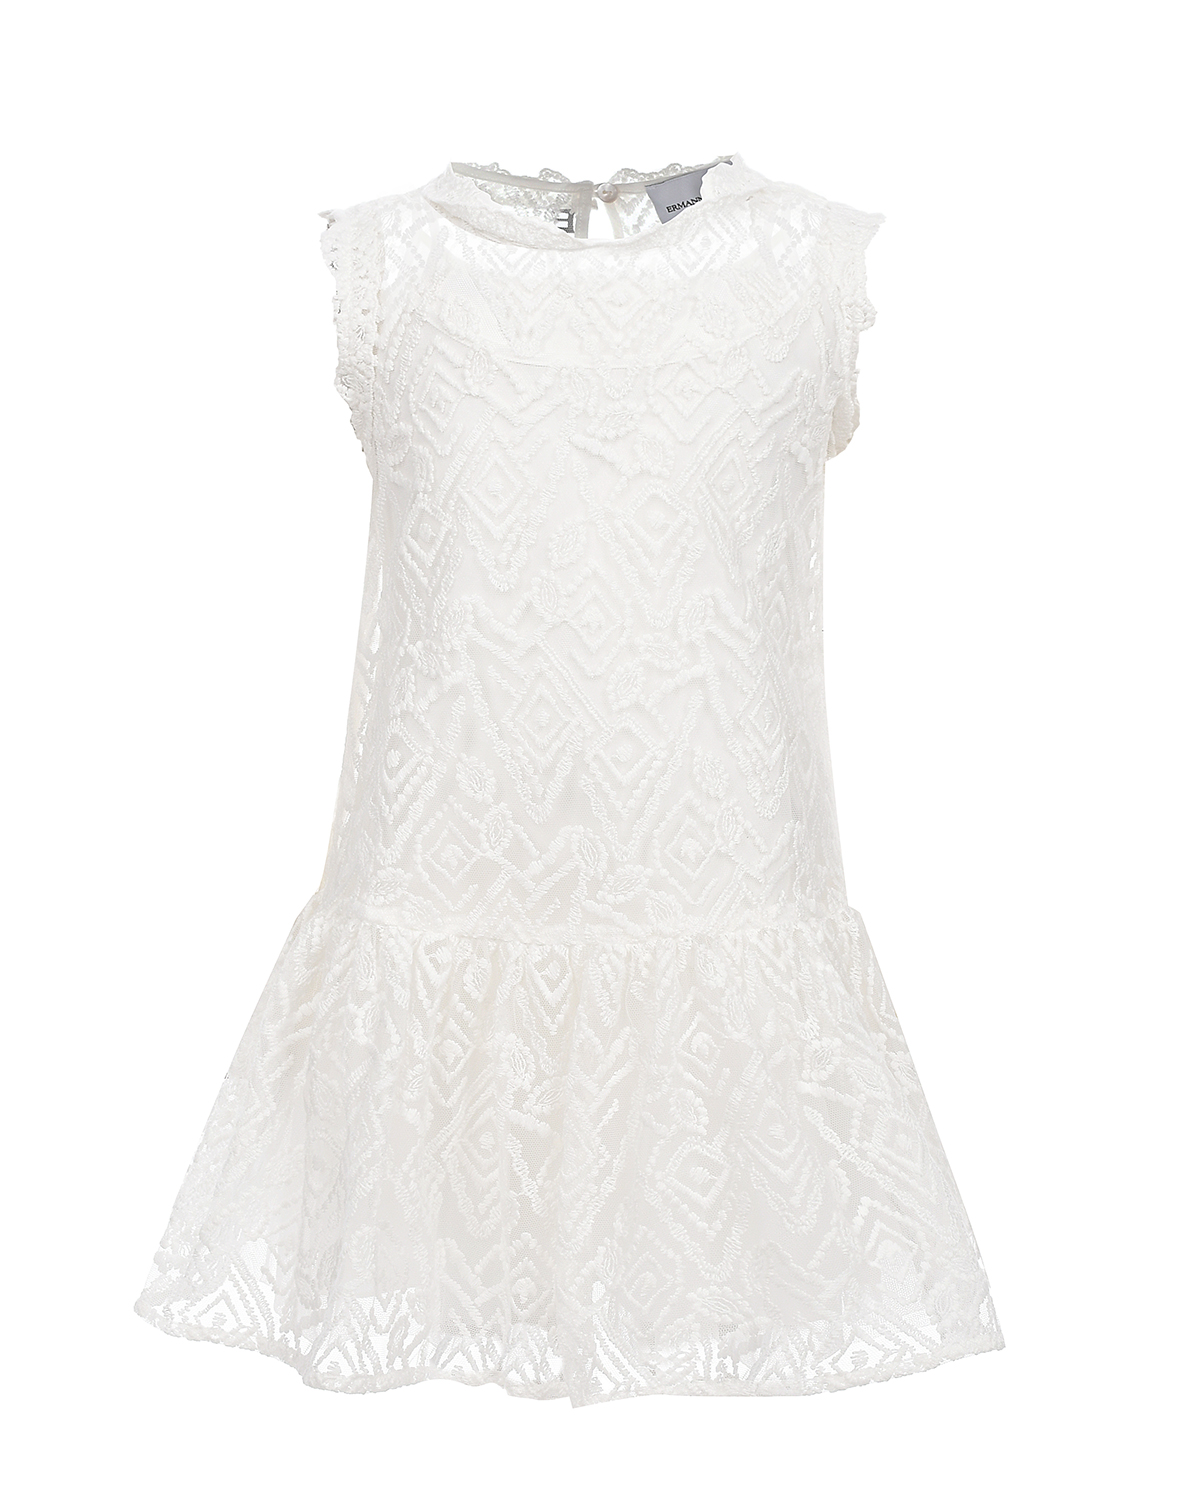 Белое платье с цветочной вышивкой Ermanno Scervino платье для животных клубничка s дс 25 ог 35 см белое